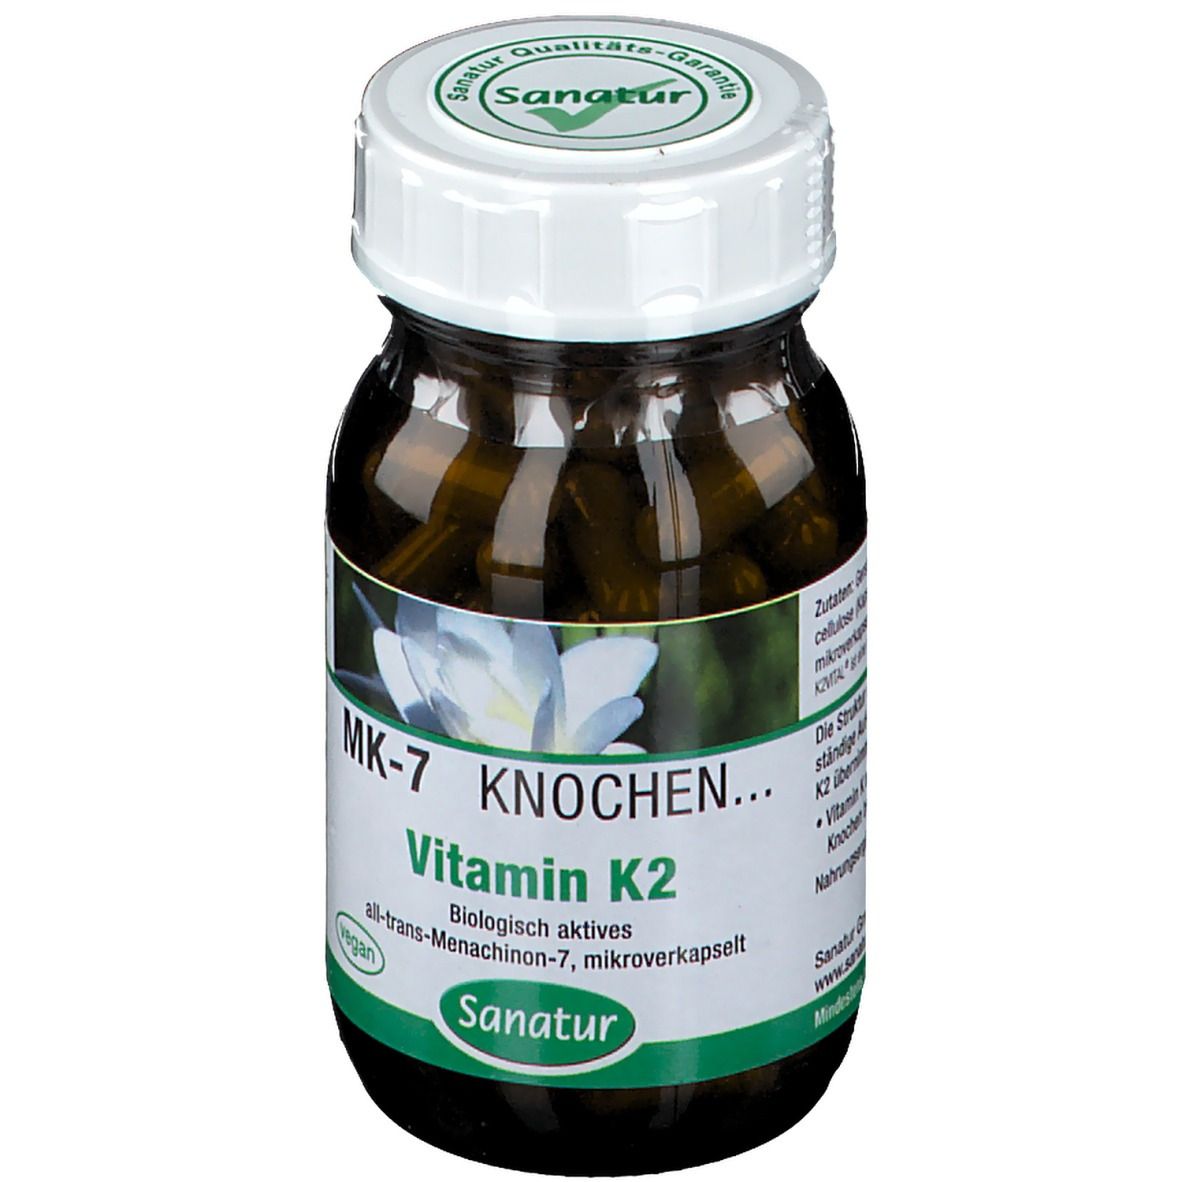 Sanatur Vitamin K2